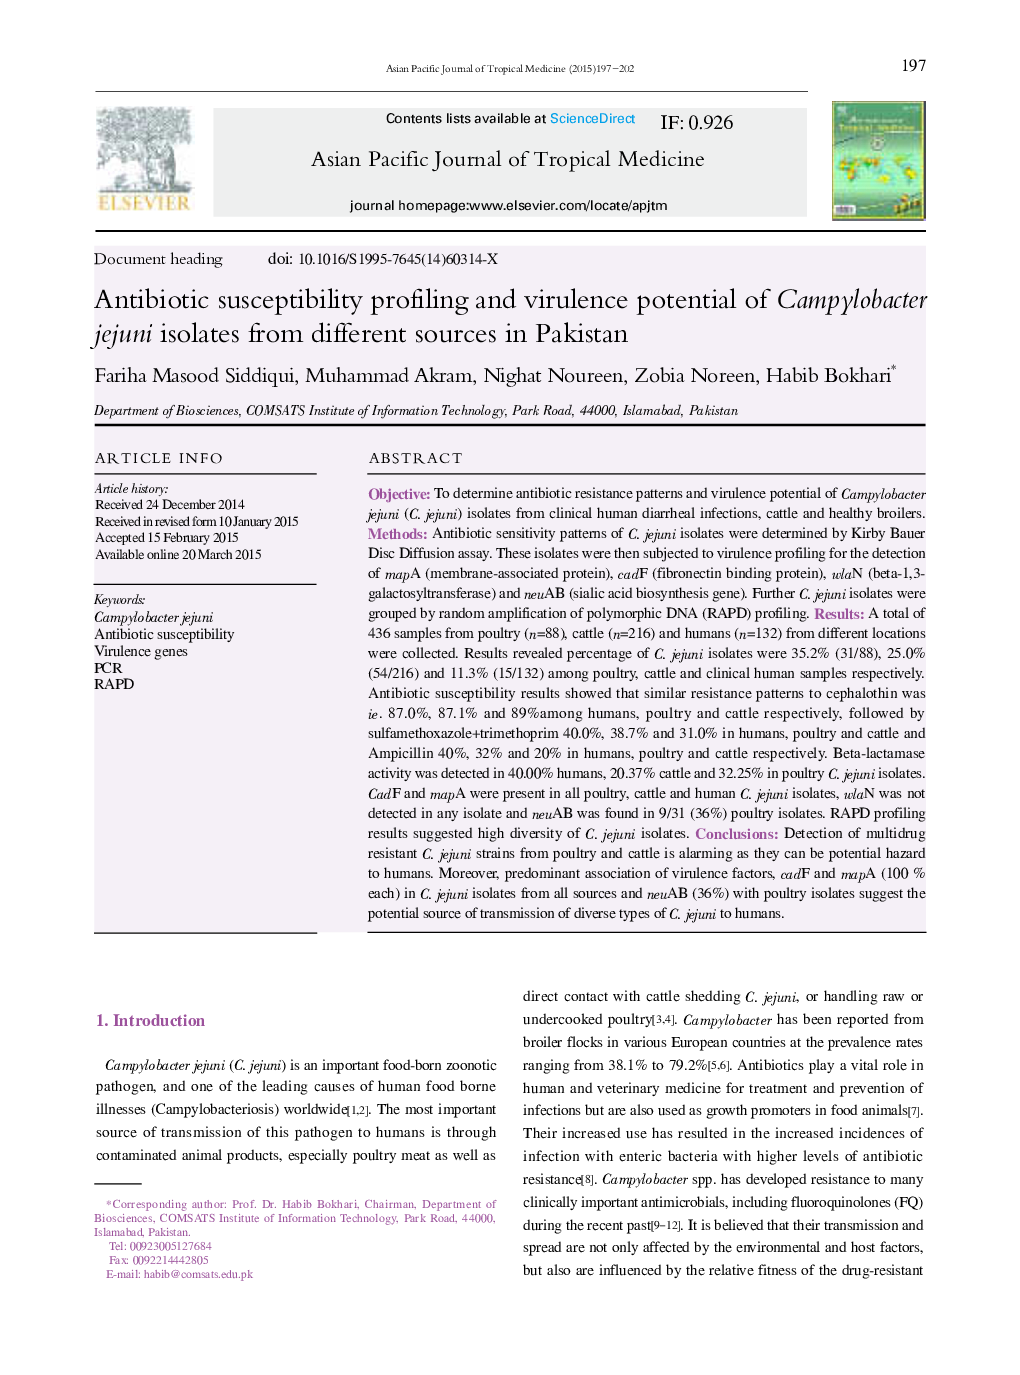 پروفیل حساسیت آنتی بیوتیک و پتانسیل ویروزی موجودات جداسازی کمپیلوباکتر ججونی از منابع مختلف در پاکستان 